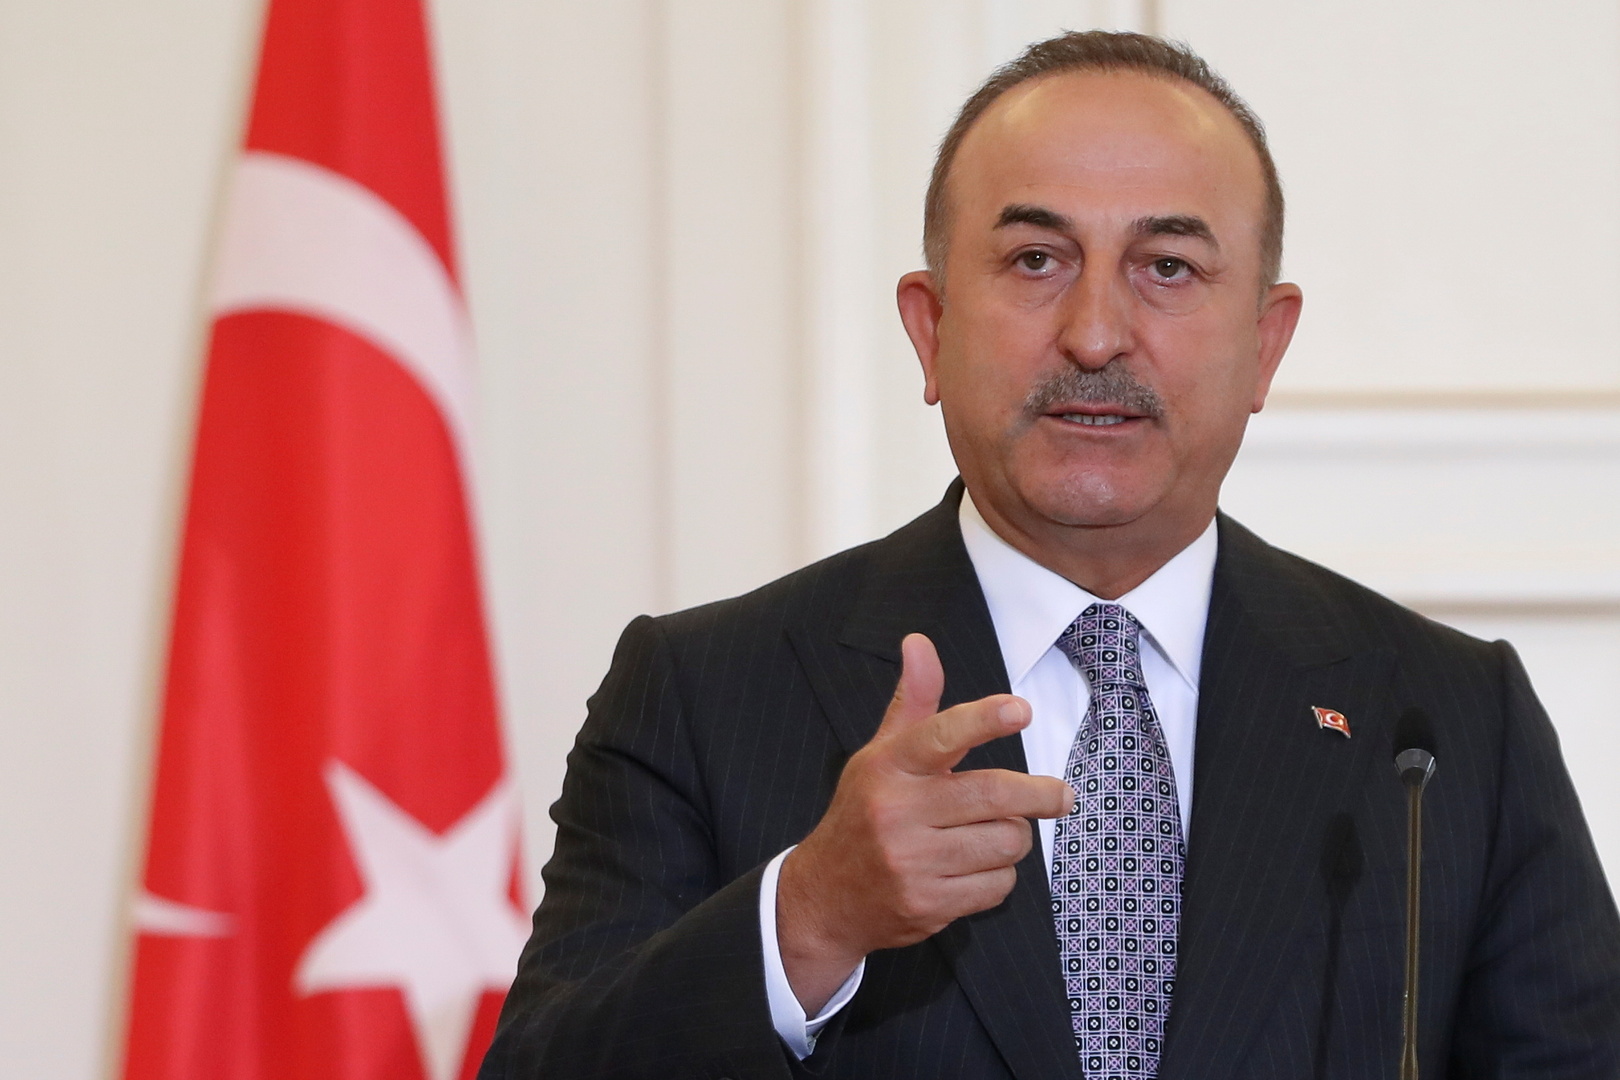 تركيا تتحدث عن سير المفاوضات مع مصر ومسألة تبادل السفيرين وموقف البلدين من ليبيا